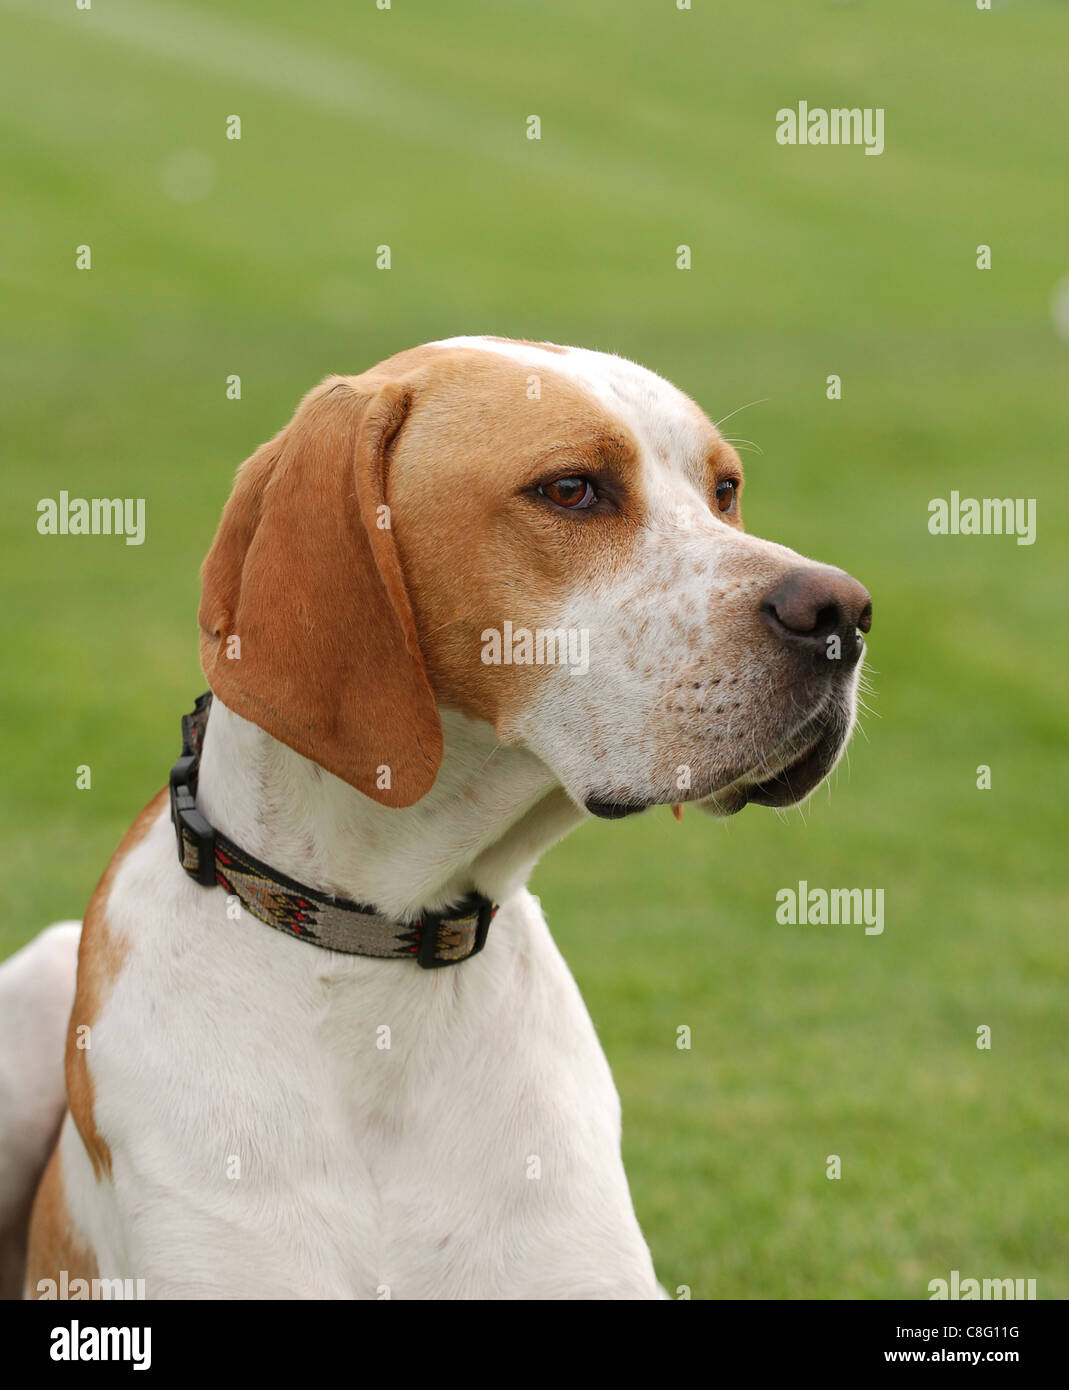 English Pointer dog puppy portrait in garden Stock Photo